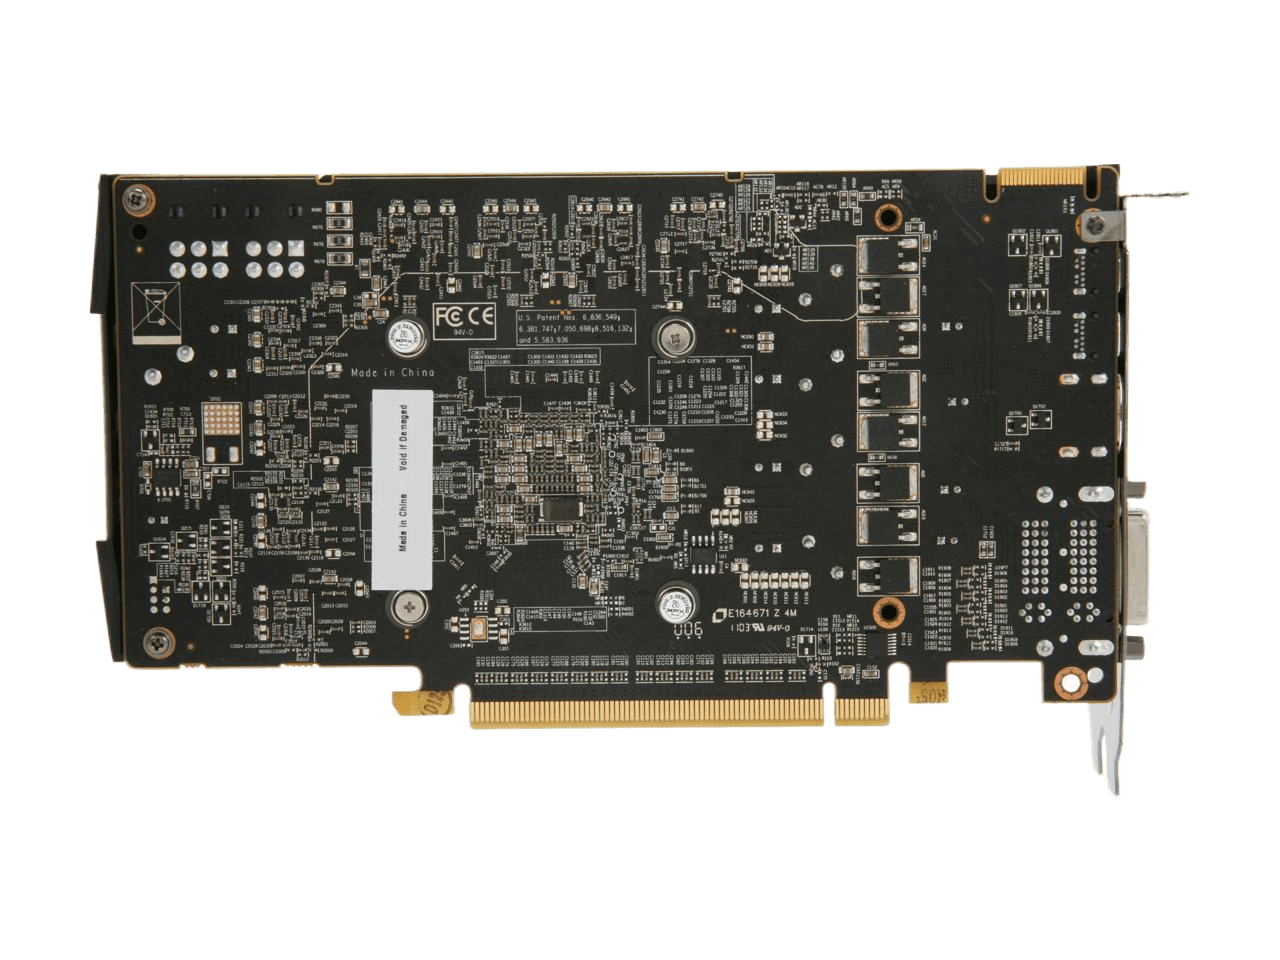 XFX Radeon HD 6870 2GB GDDR5 PCI Express 2.1 x16 CrossFireX Support Video Card HD-687X-CNFC